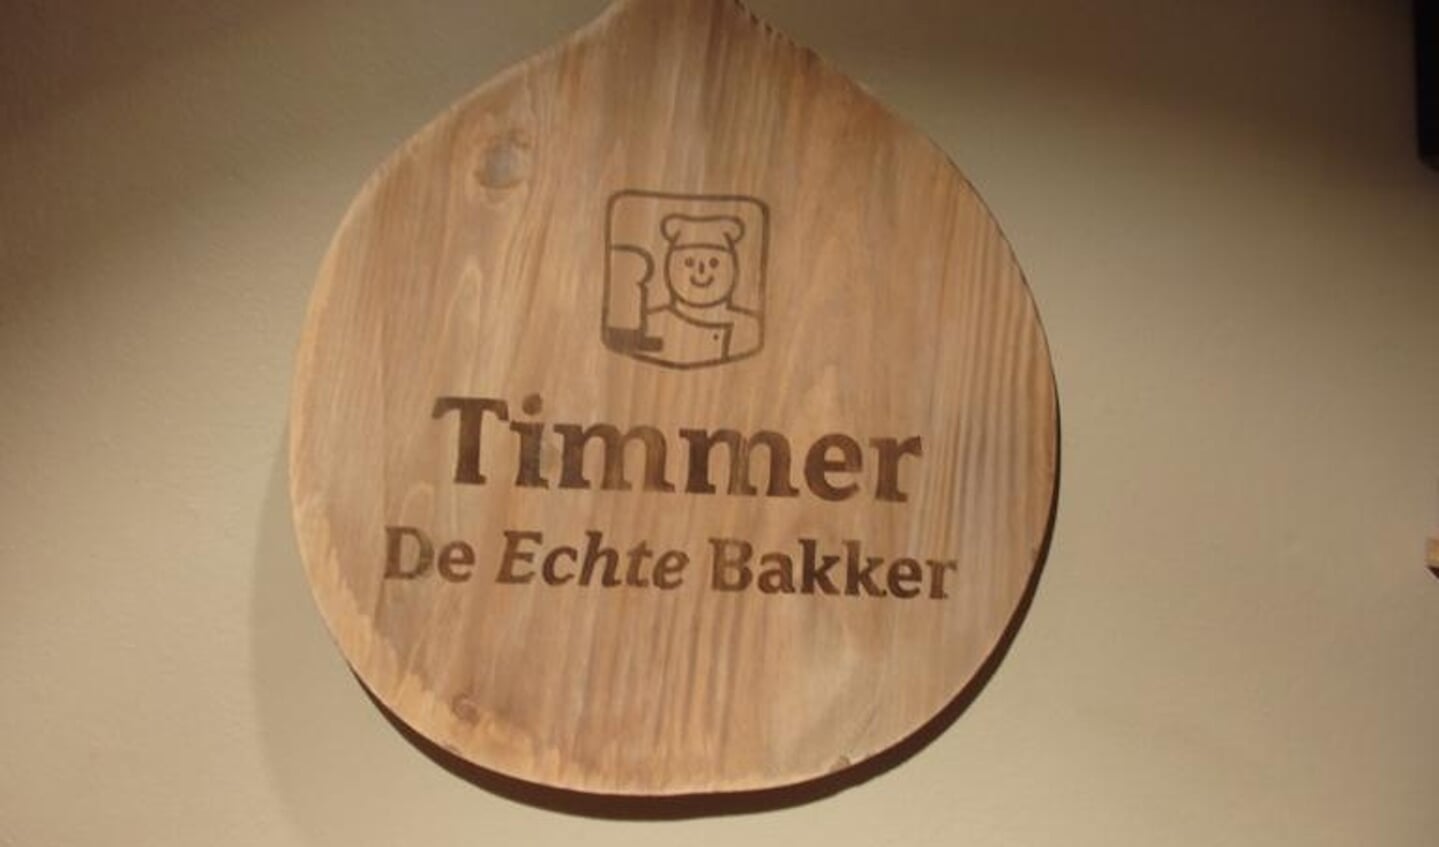 Vrijdag 17 februari bestaat Bakkerij Timmer 70 jaar. (Foto: Mikel Knippenberg)